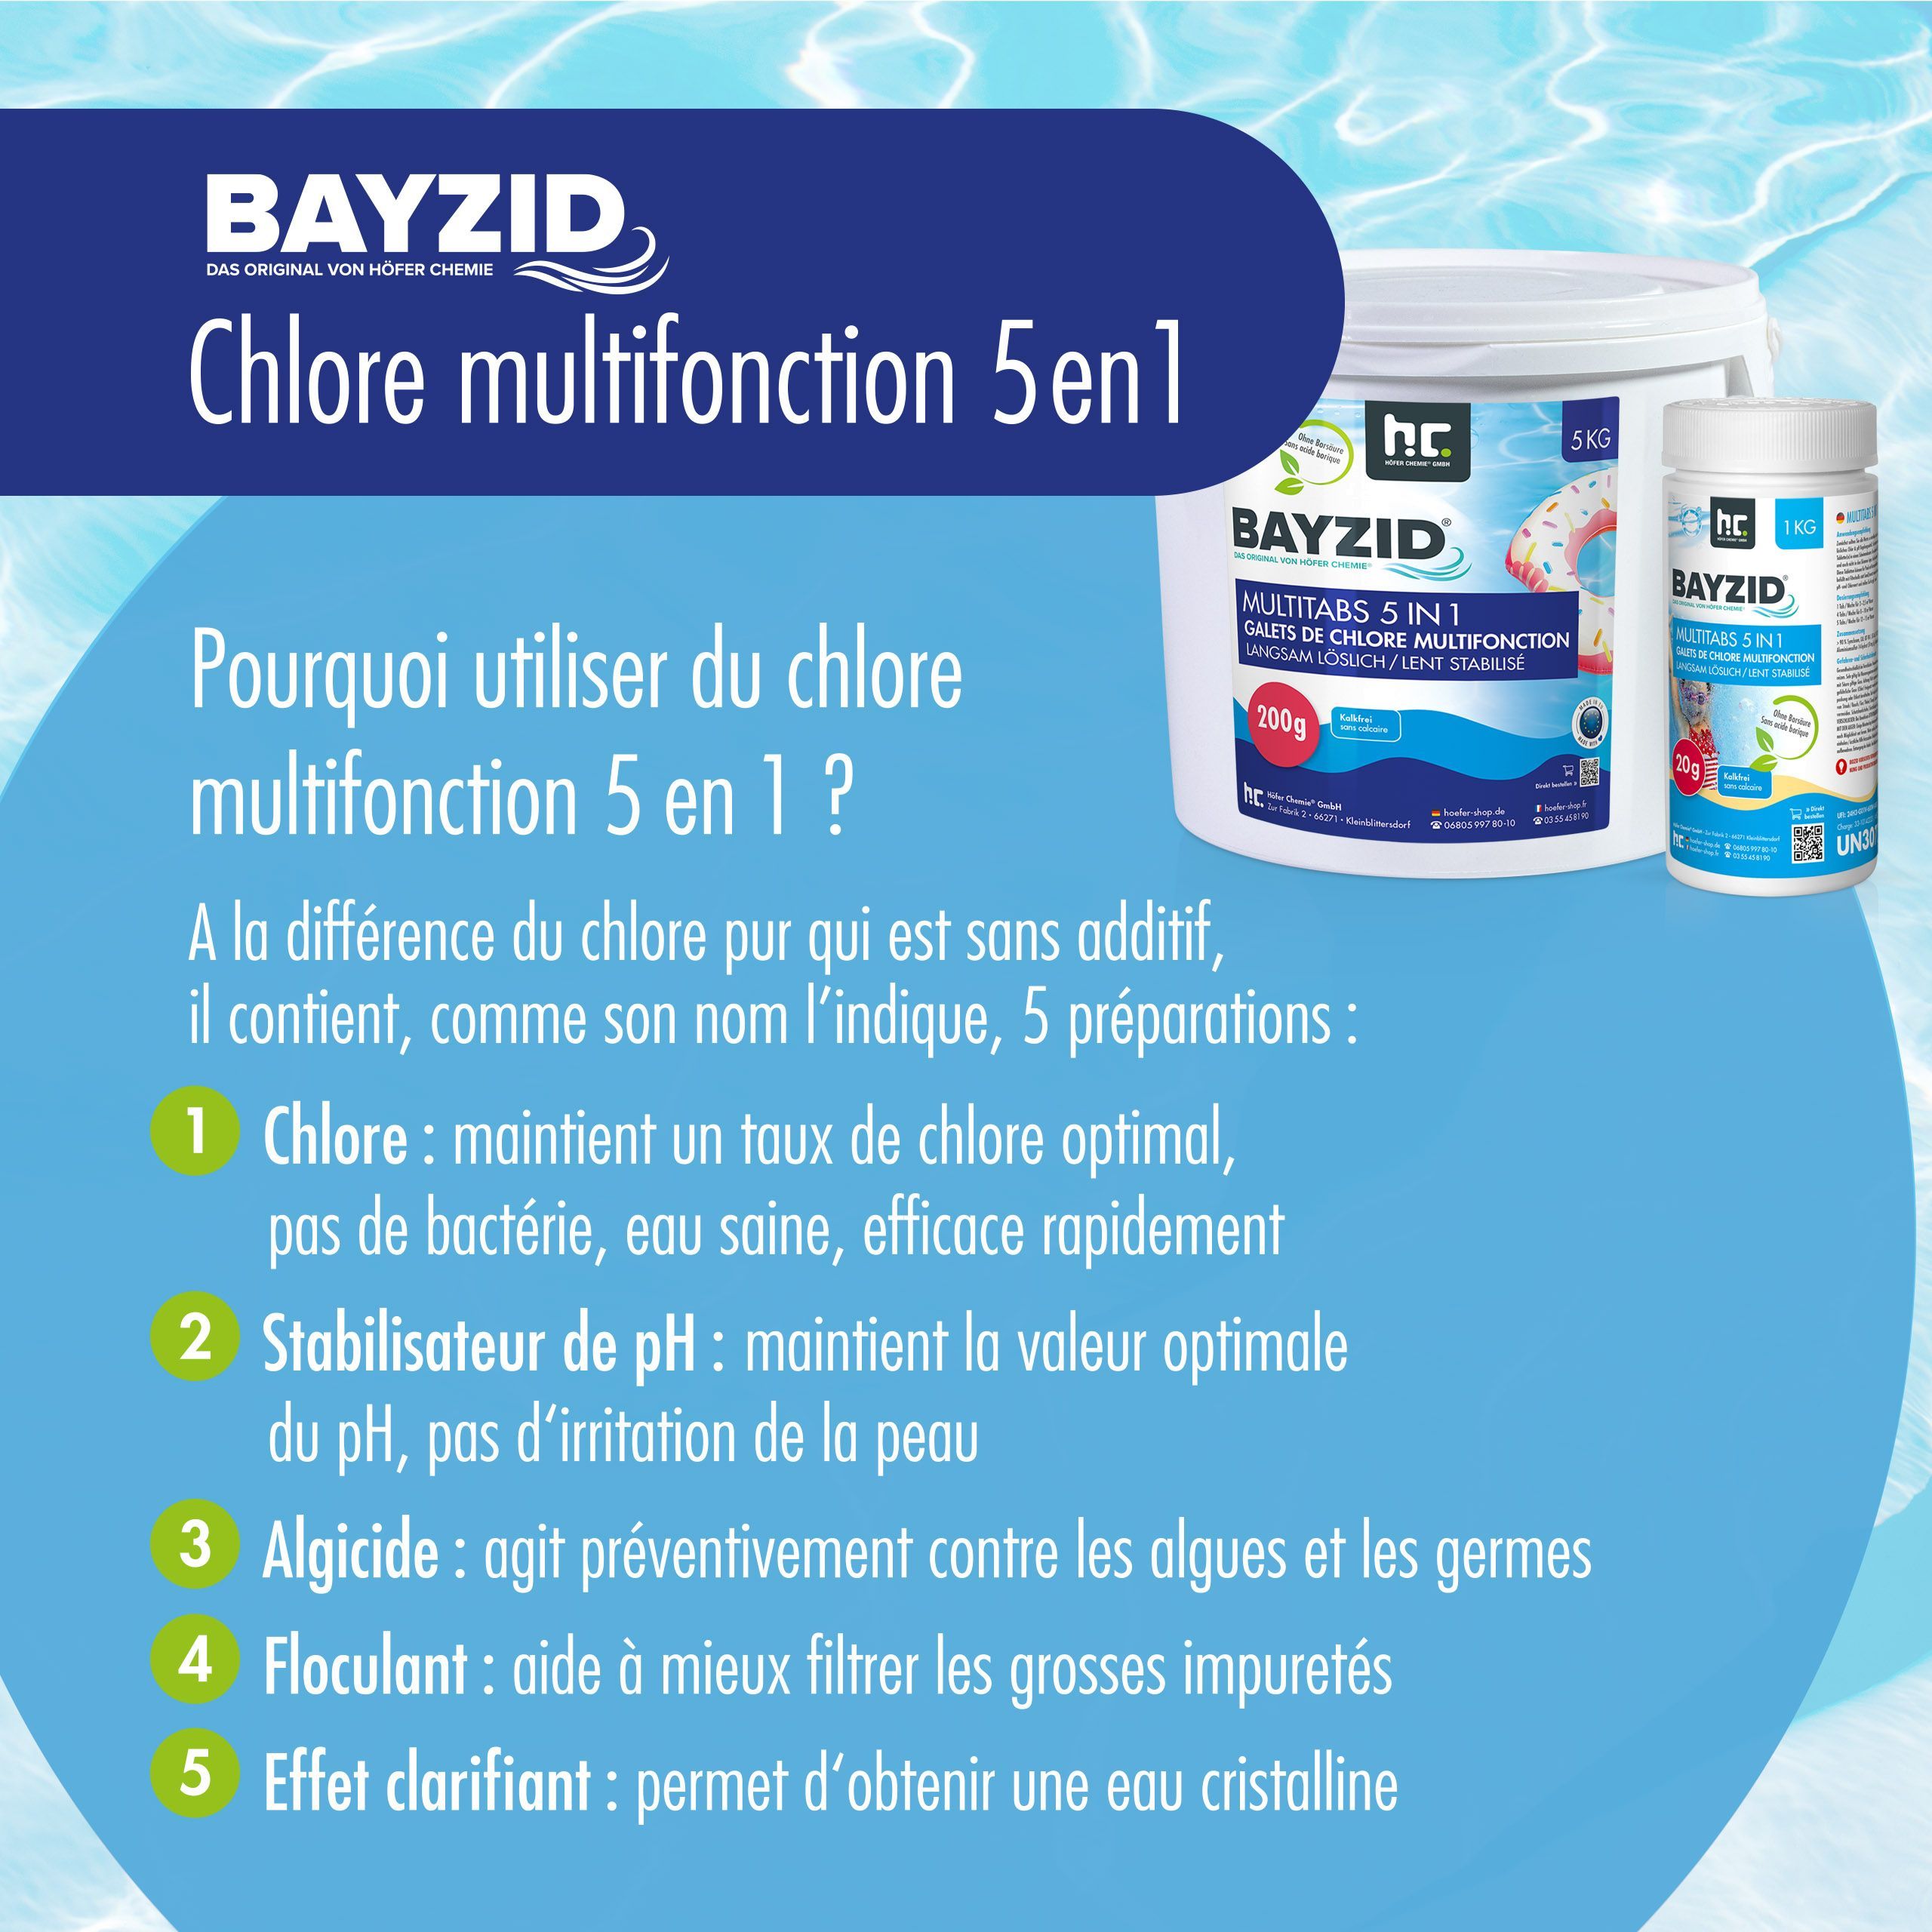 1 kg BAYZID® Multitabs 200g 5in1 für Pools